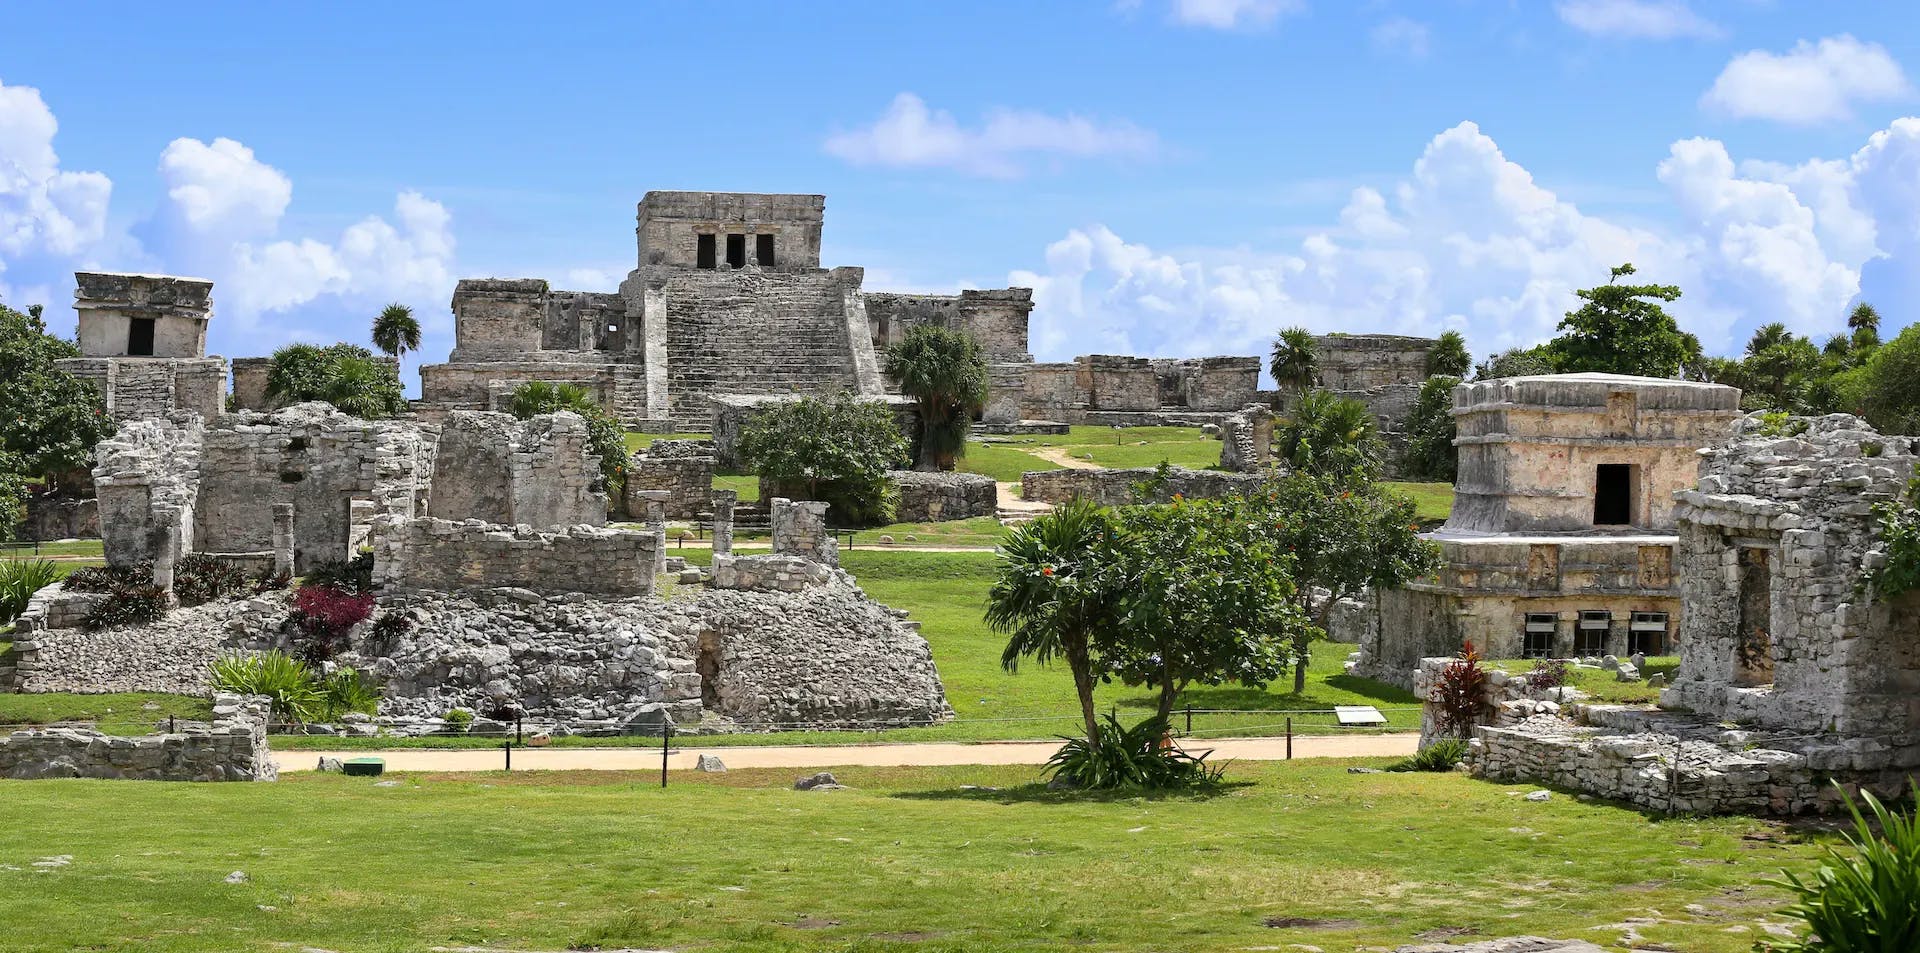 tulum ruins in mexico